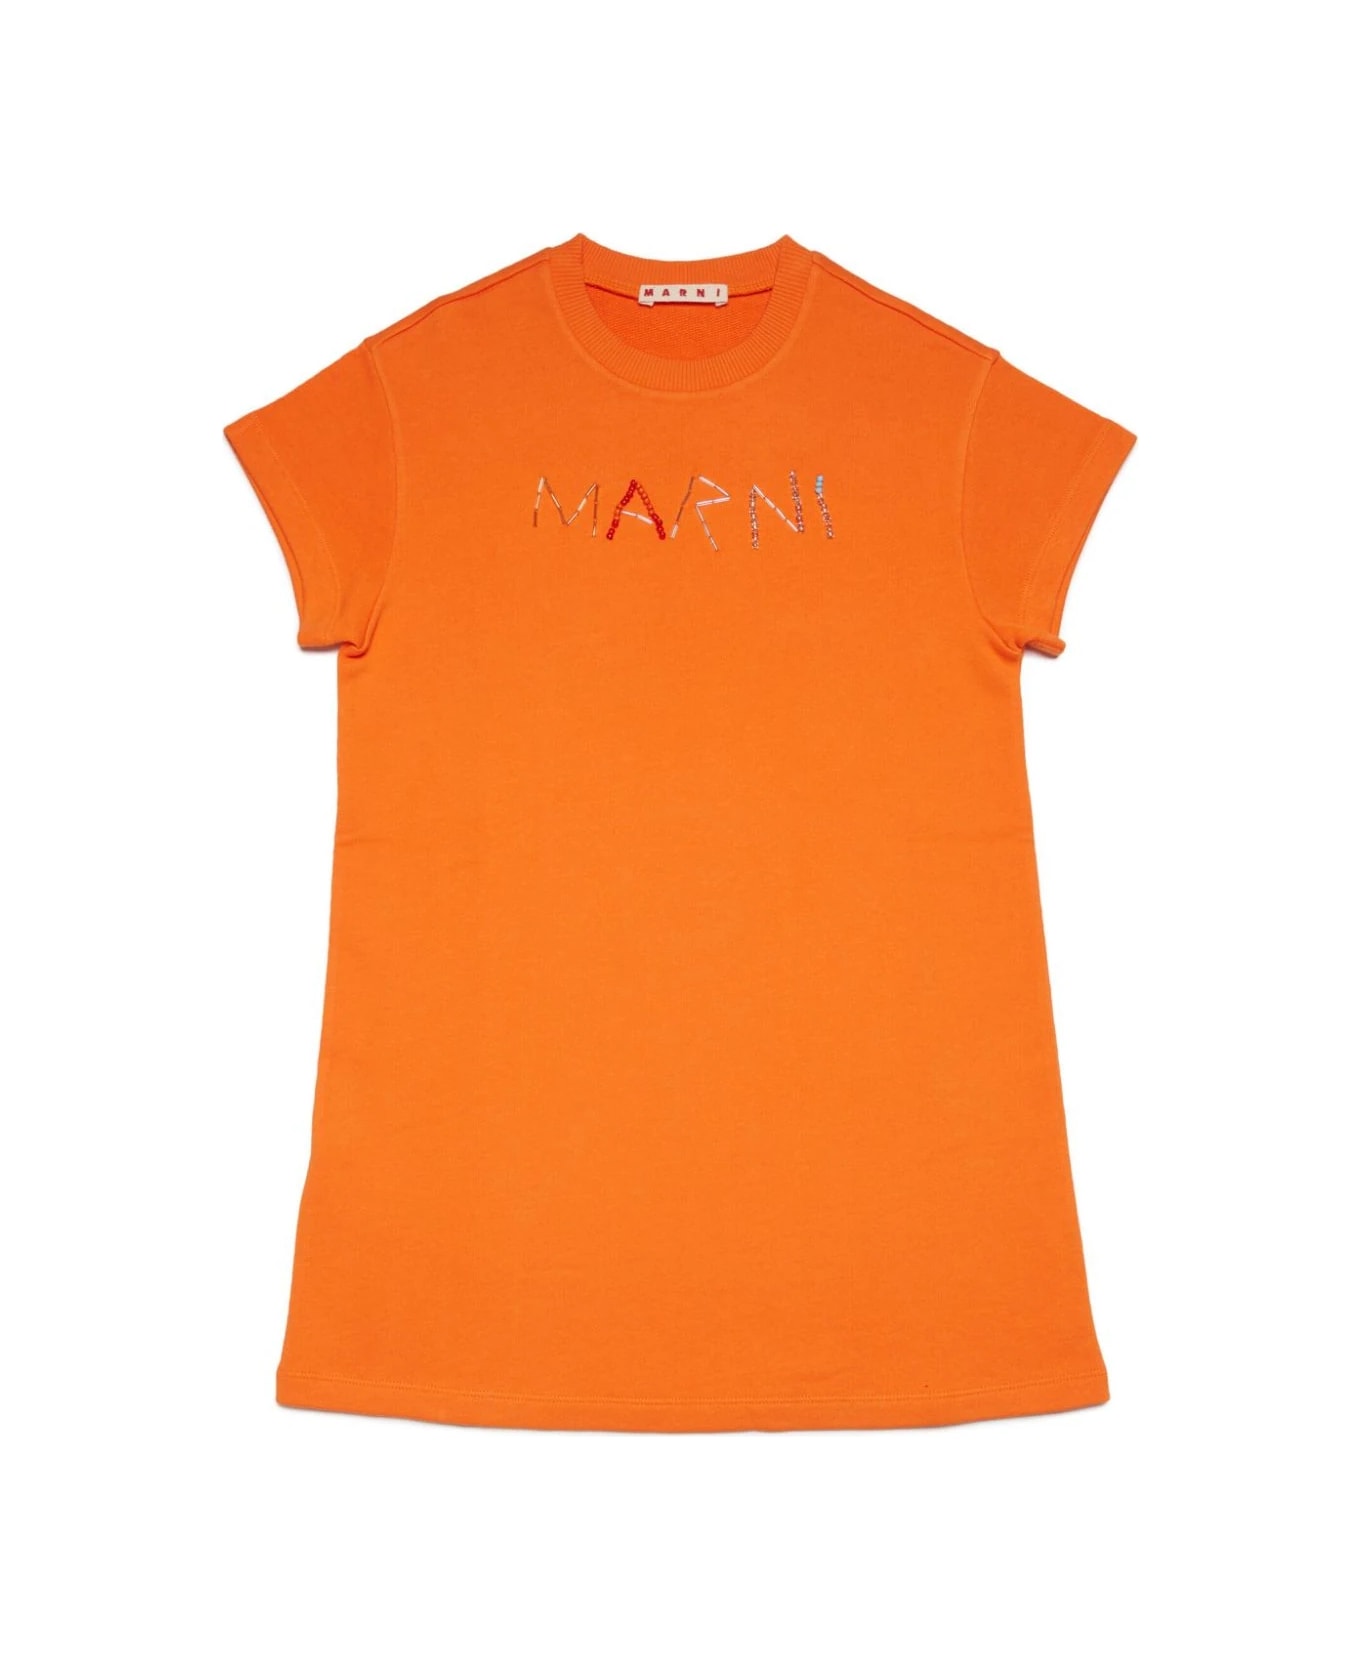 Marni Abito Con Logo - Orange